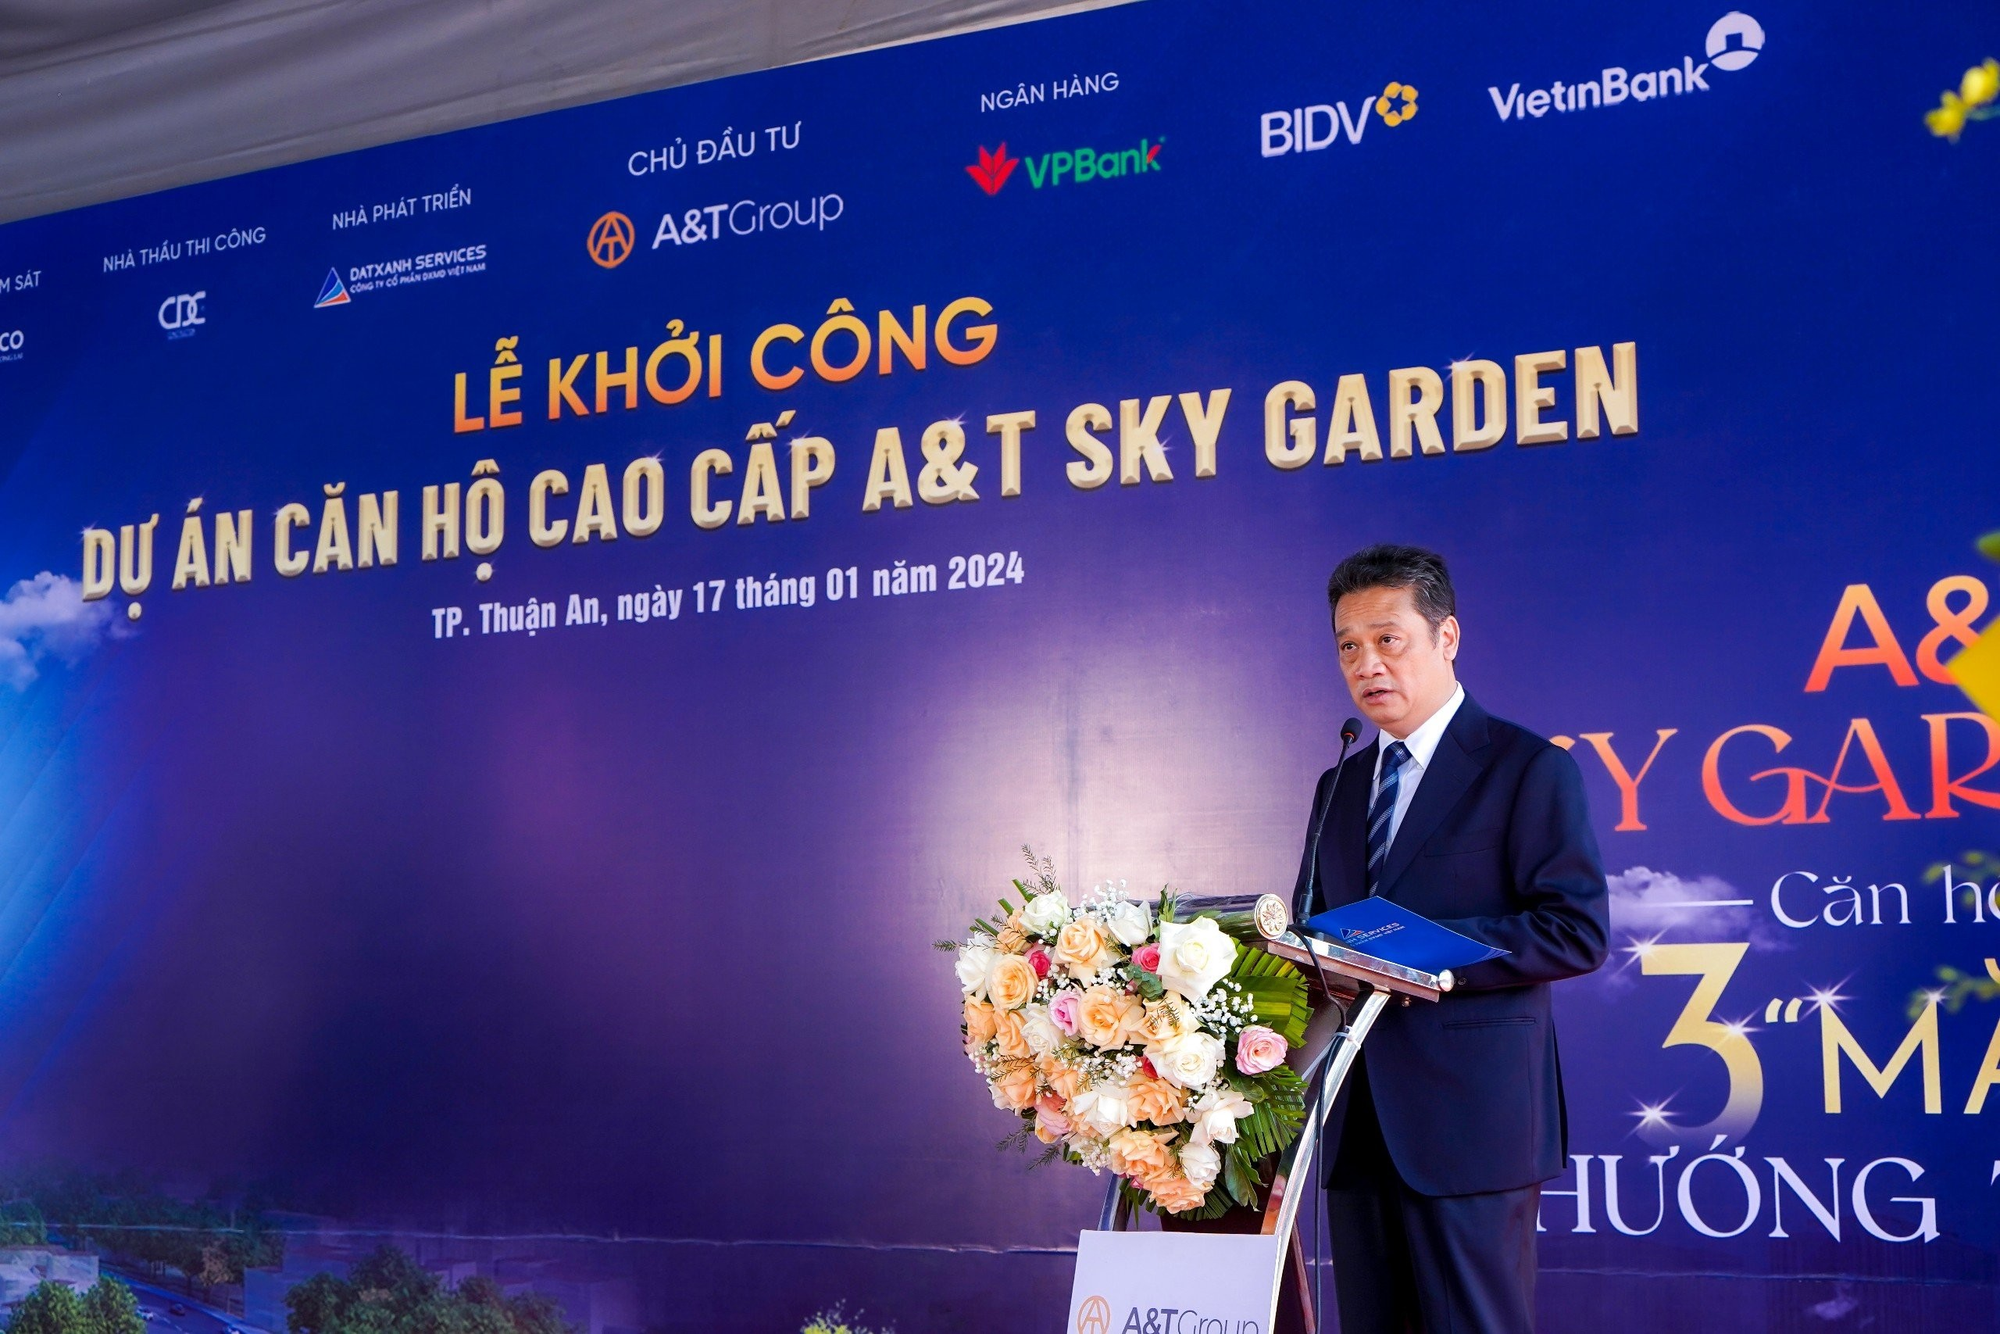 Ông Đặng Hồng An - Chủ tịch Hội đồng Quản trị - Tổng Giám Đốc A&T Group phát biểu tại buổi lễ.